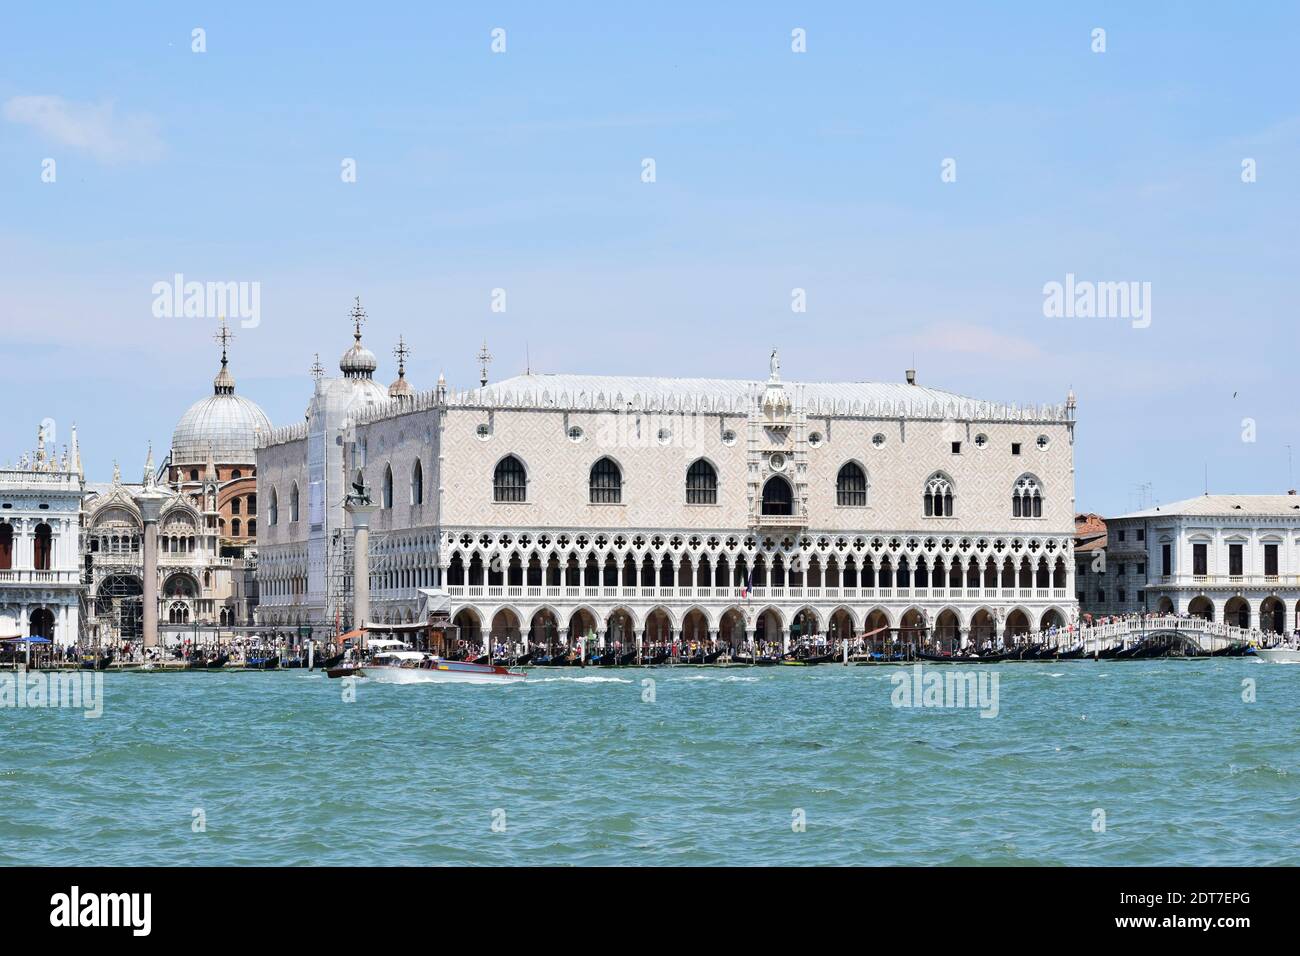 VENEZIA, ITALIA - 3 LUGLIO 2019: Lungomare dello storico Palazzo Ducale (Ital. Palazzo Ducale, fondato nel 1340 d.C.) a Venezia, Italia. Foto Stock